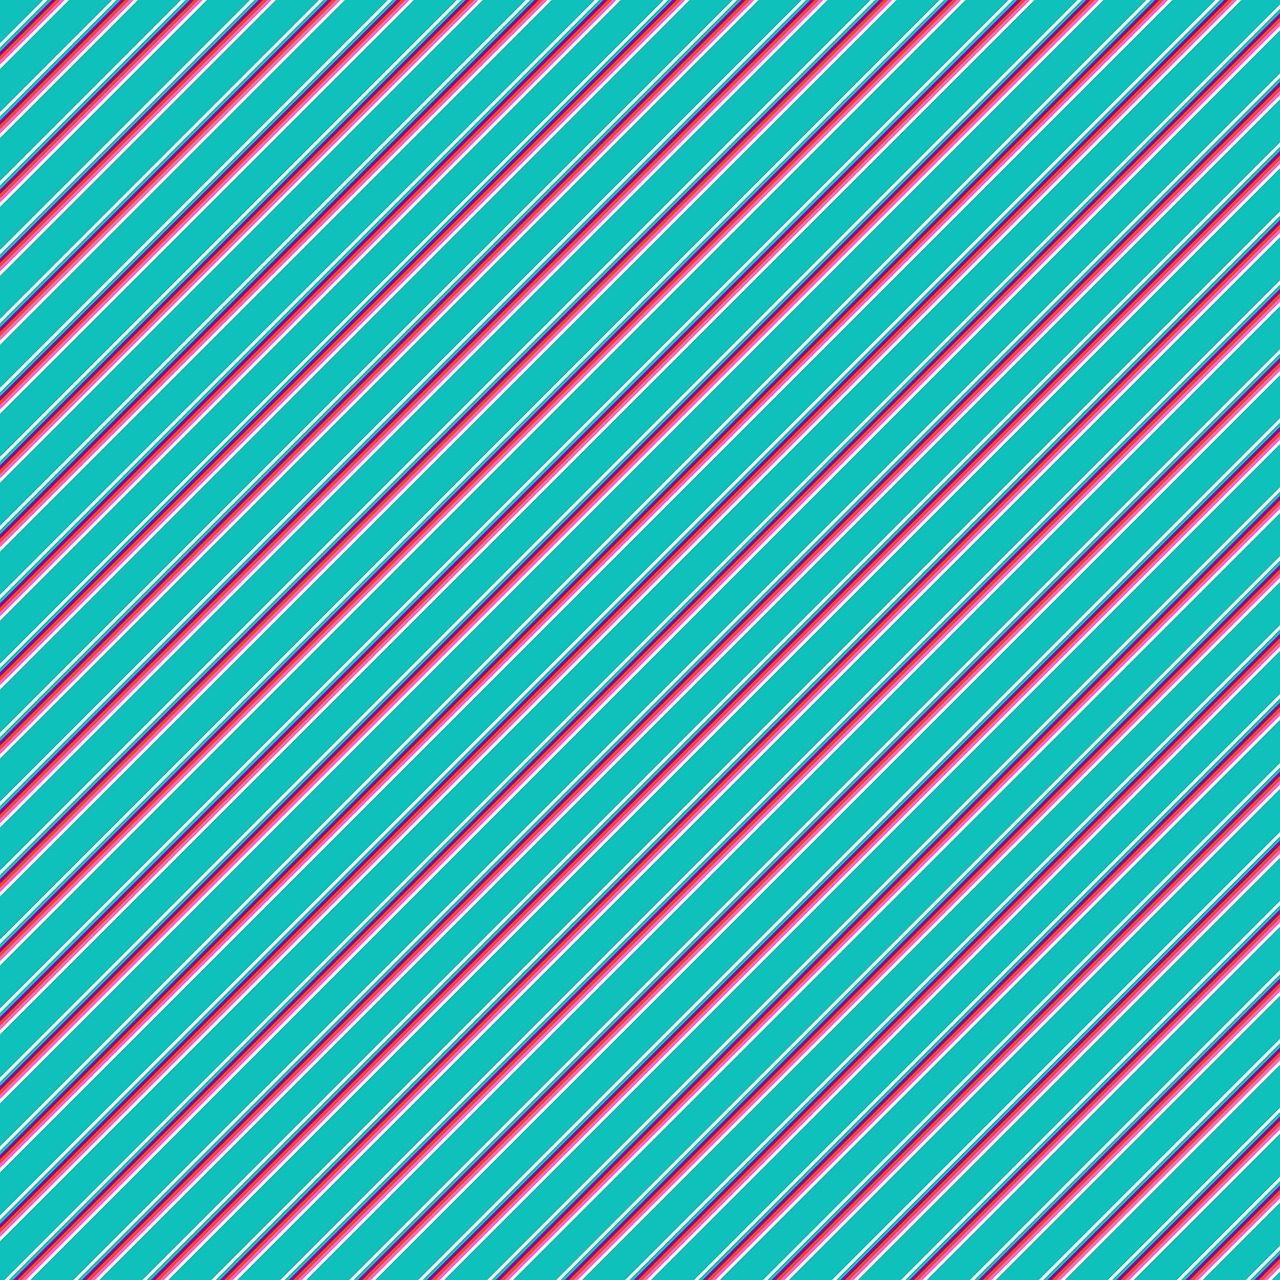 turquoise diagonal stripes free photo